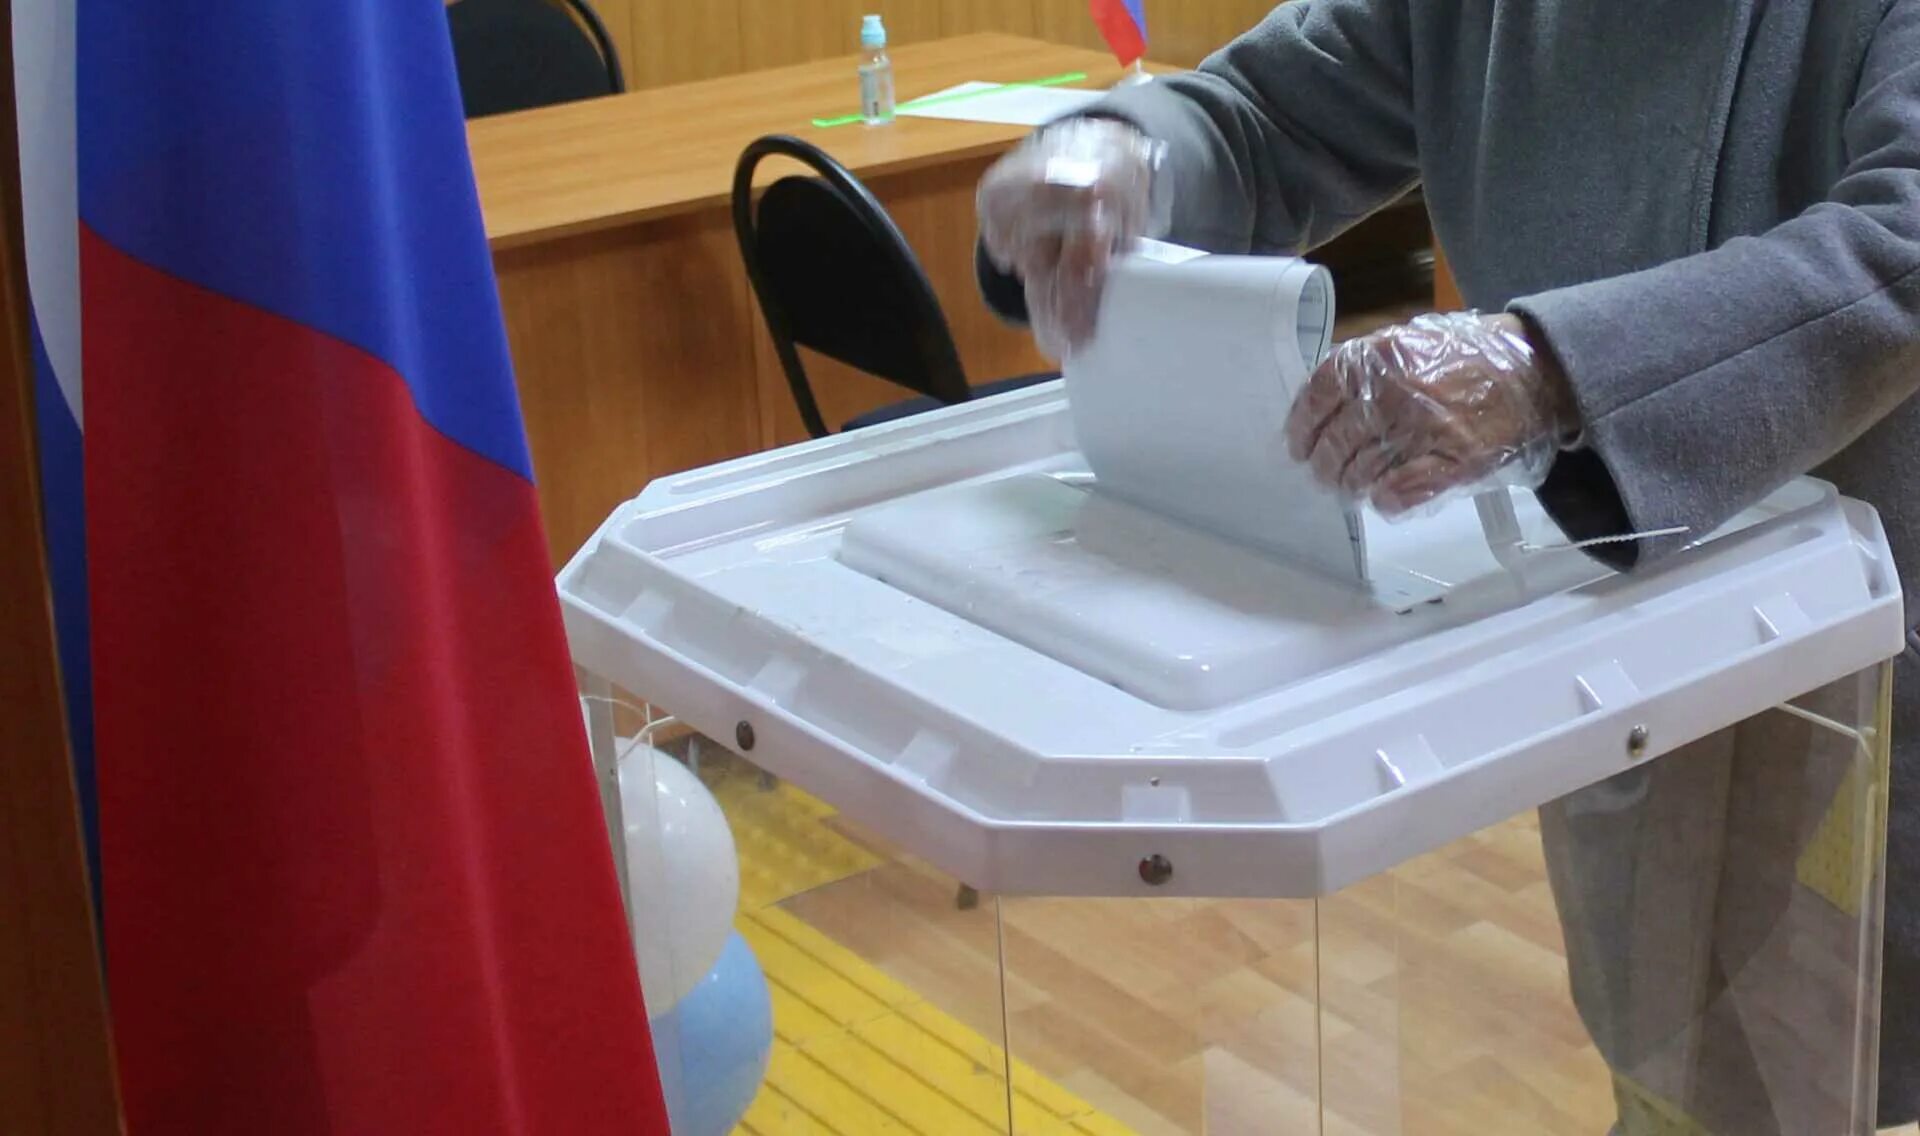 Выборы в Ветлевке. Делнгация россиыскрц Думы на выборах в азербацджане.